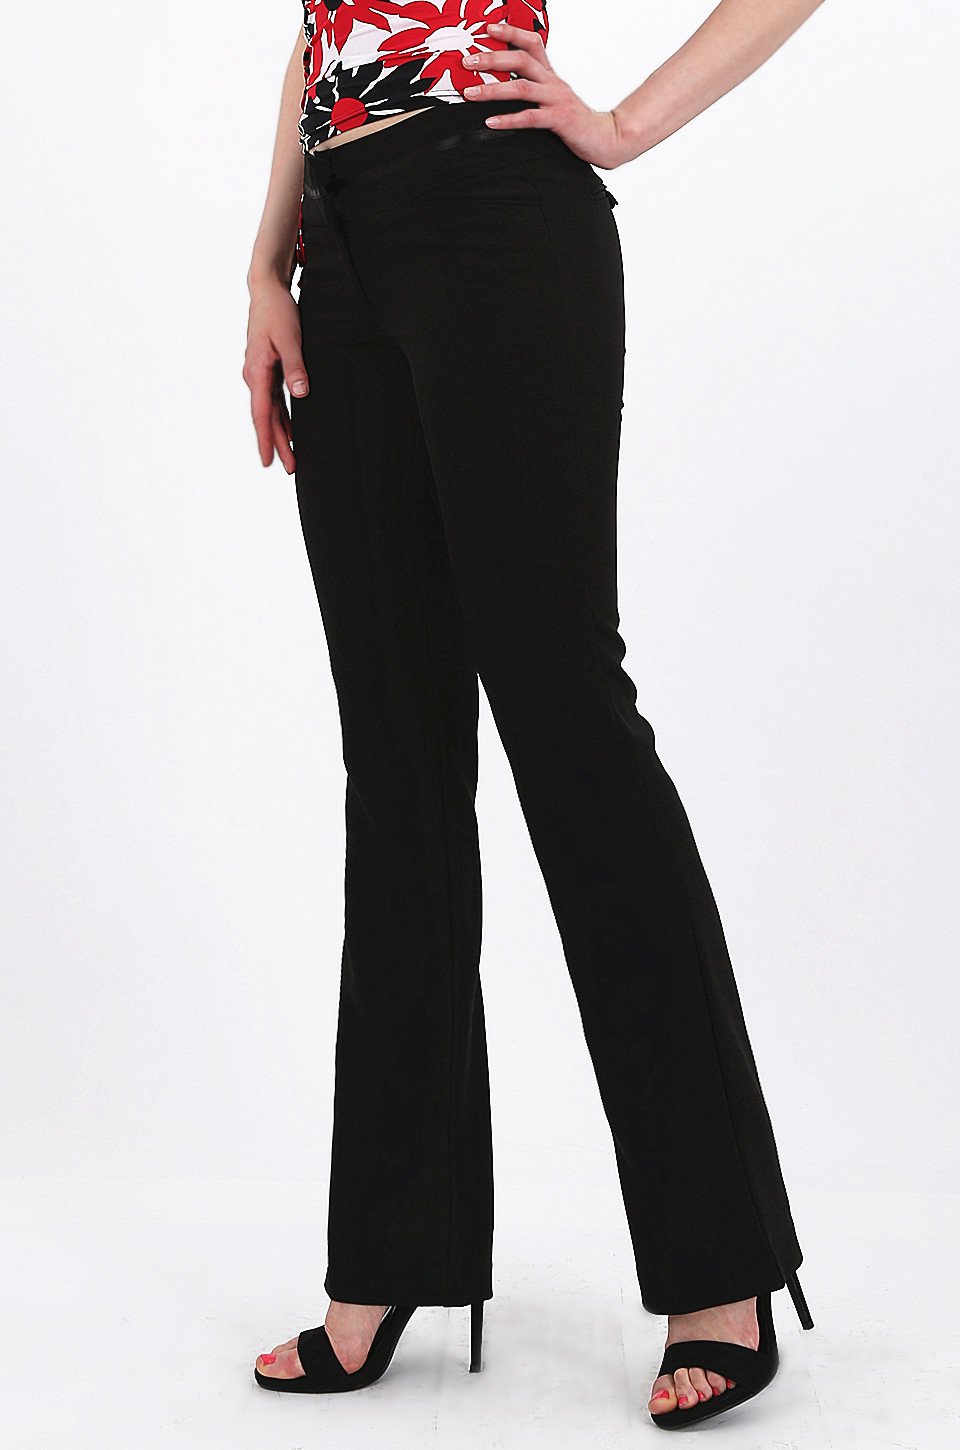 MISS PINKI Logan tailored bootcut work pants in Black